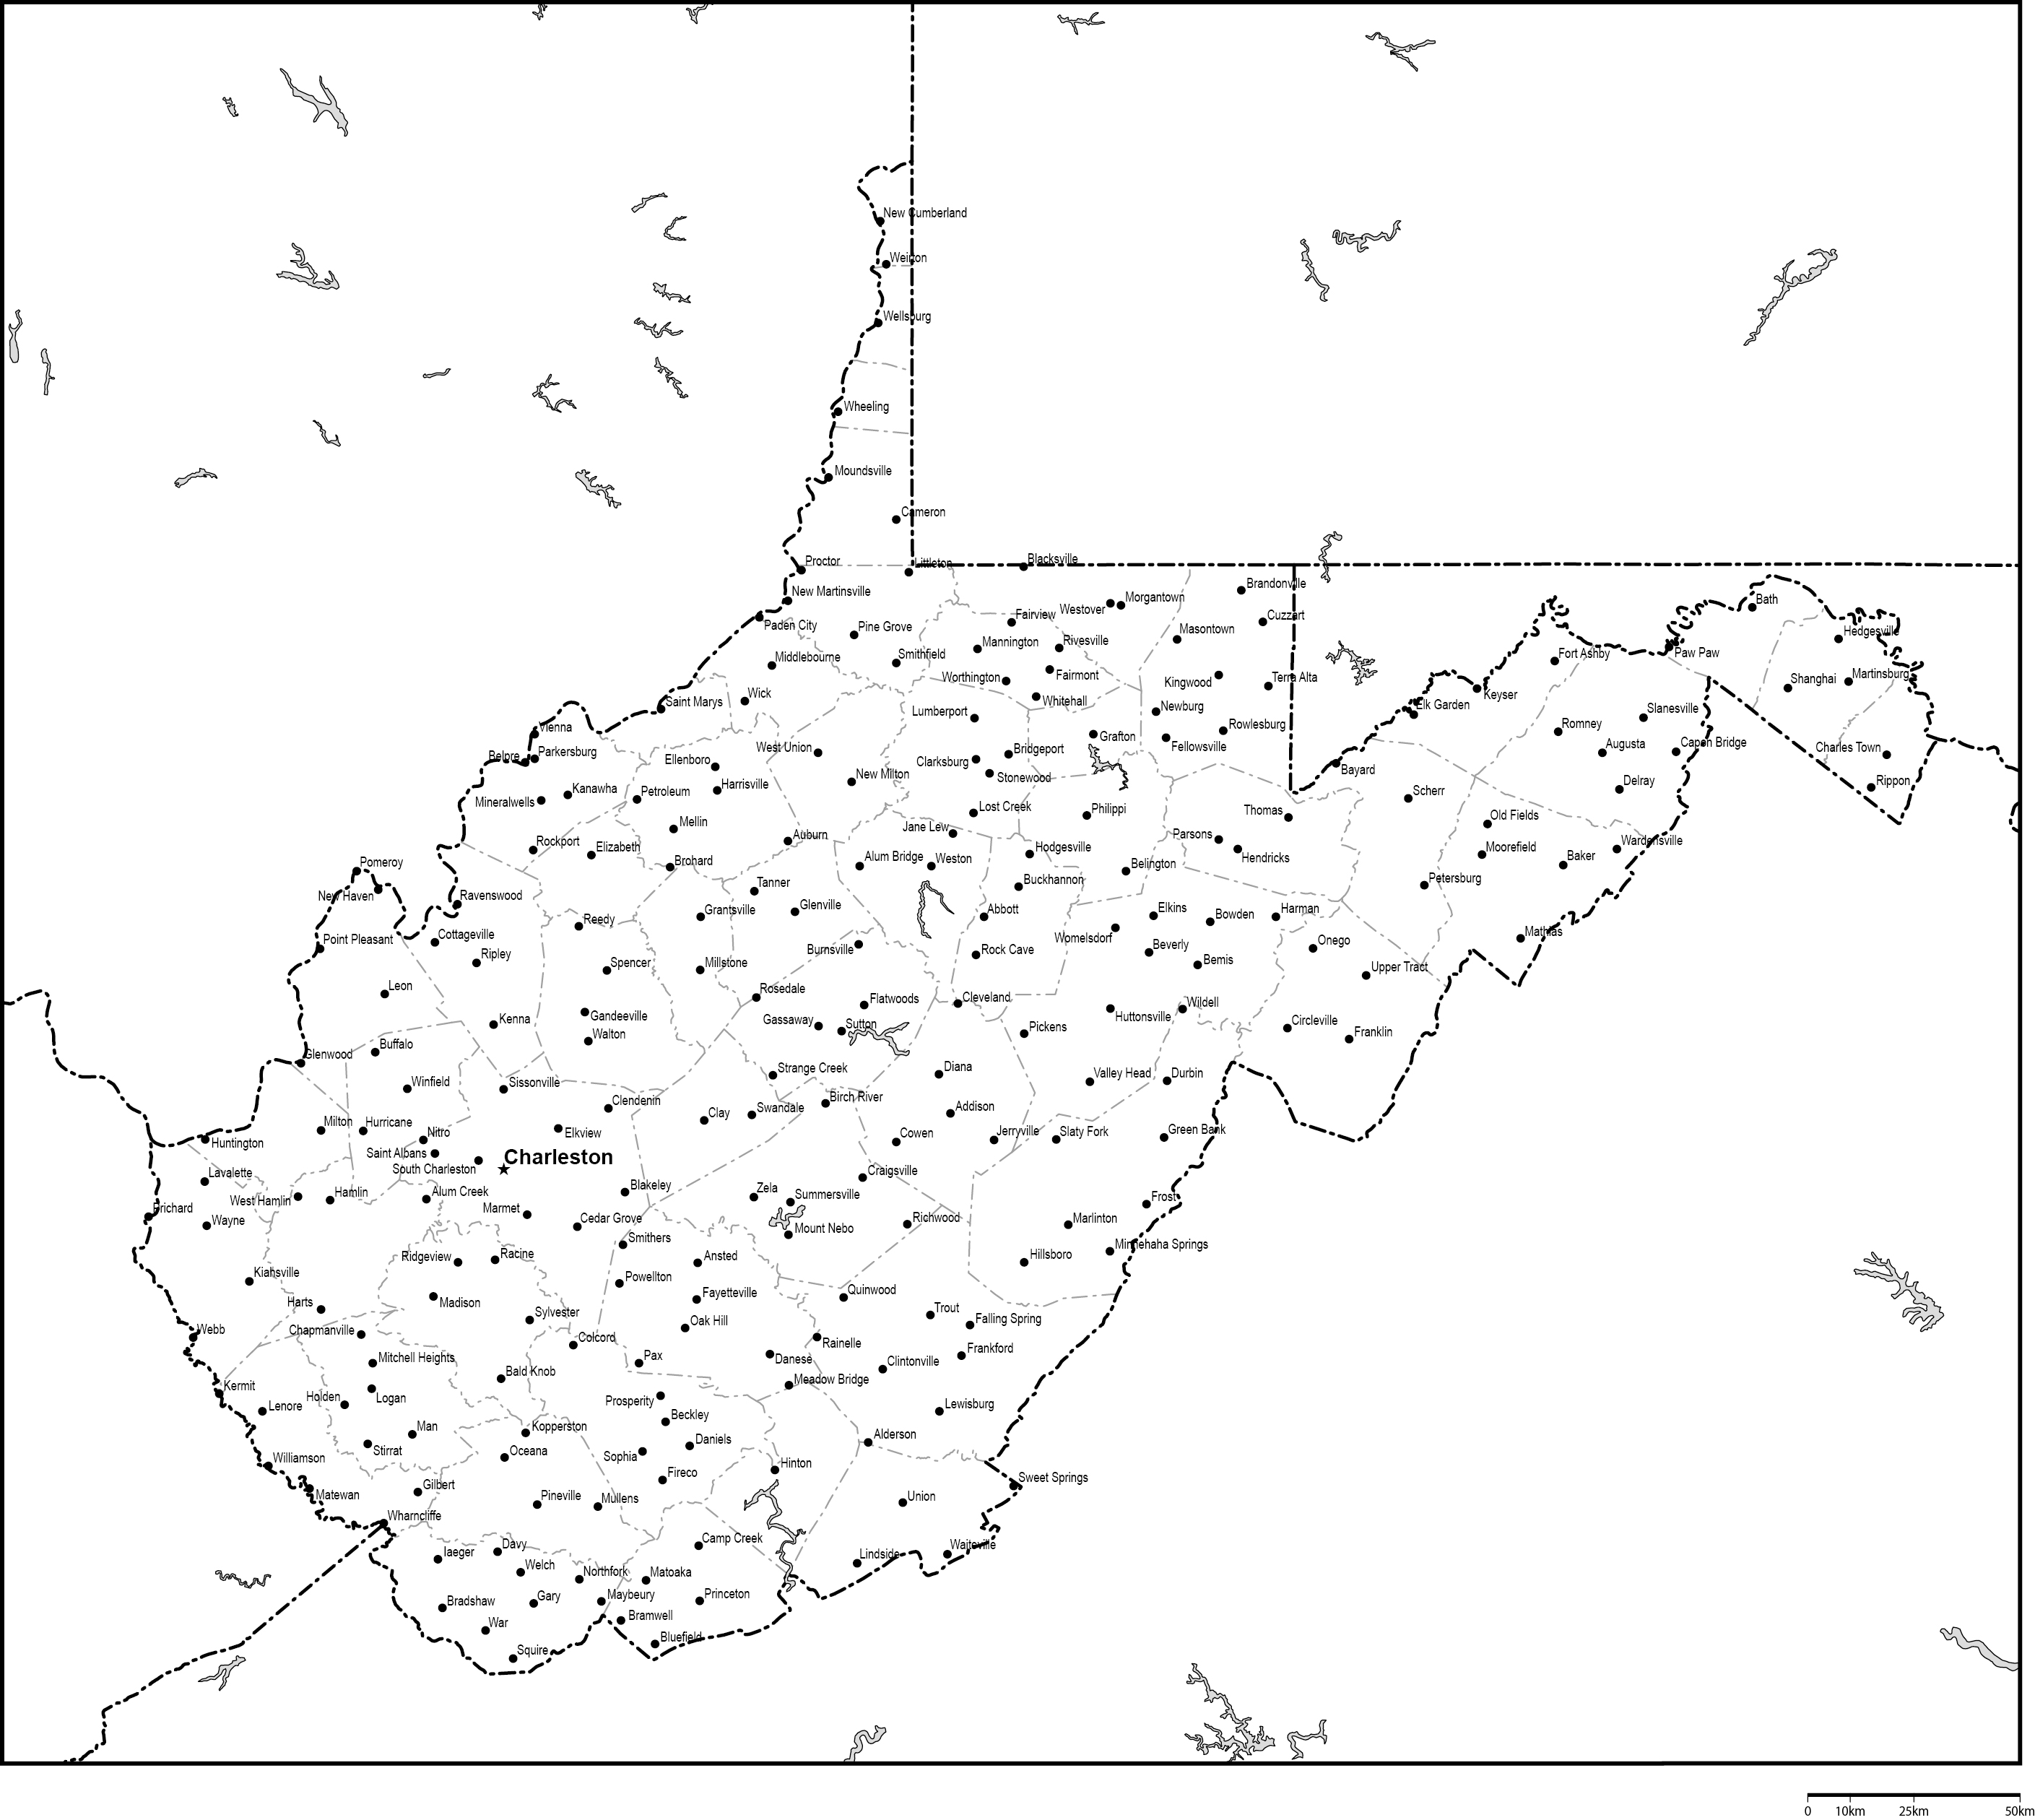 ウェストバージニア州郡分け白地図州都・主な都市あり(英語)フリーデータの画像